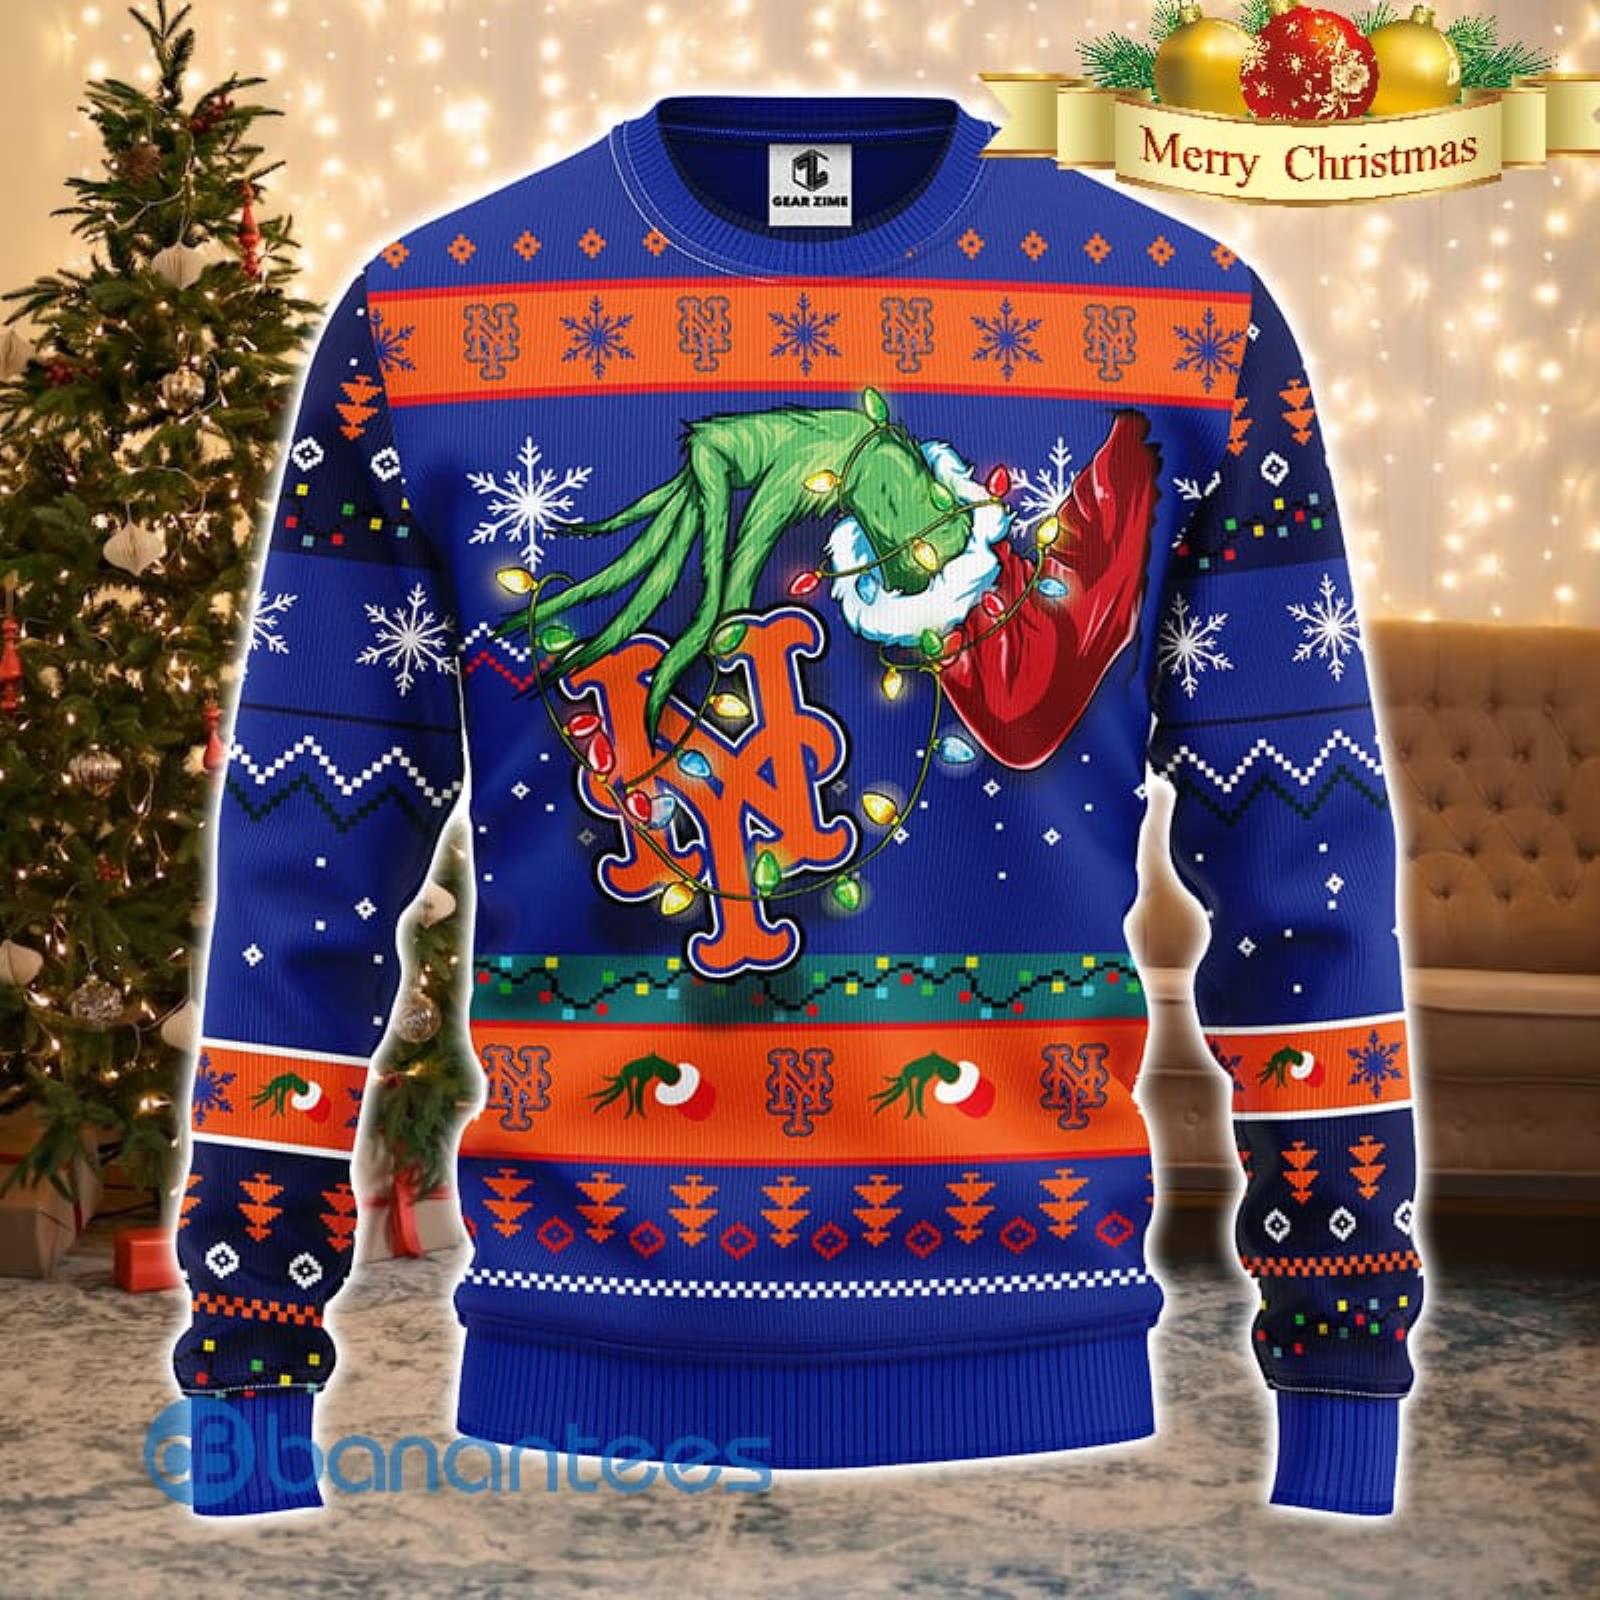 New York Mets Christmas Pattern Ugly Christmas Sweater Christmas Gift -  Banantees